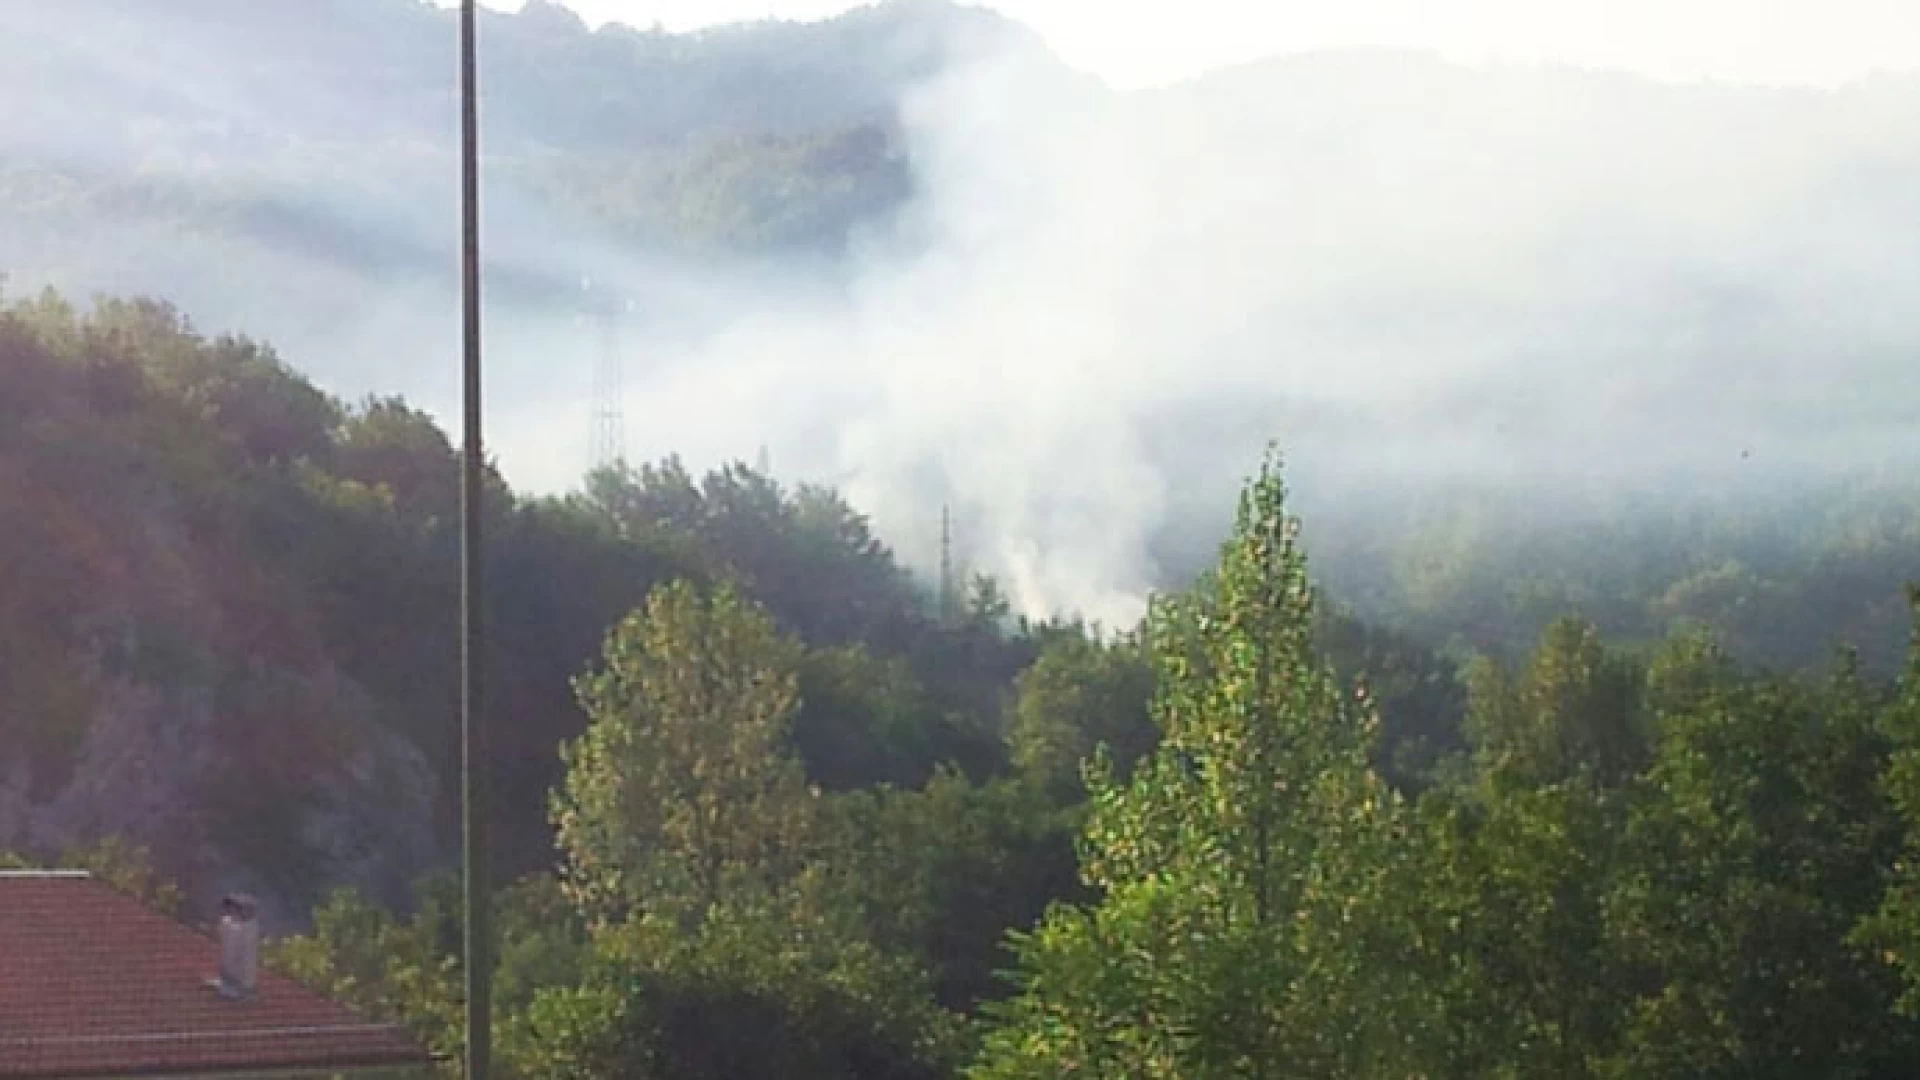 Colli a Volturno: bruciano i boschi intorno al paese. Località San Vito colpita duramente dalle fiamme. Si sospetta il dolo notturno.